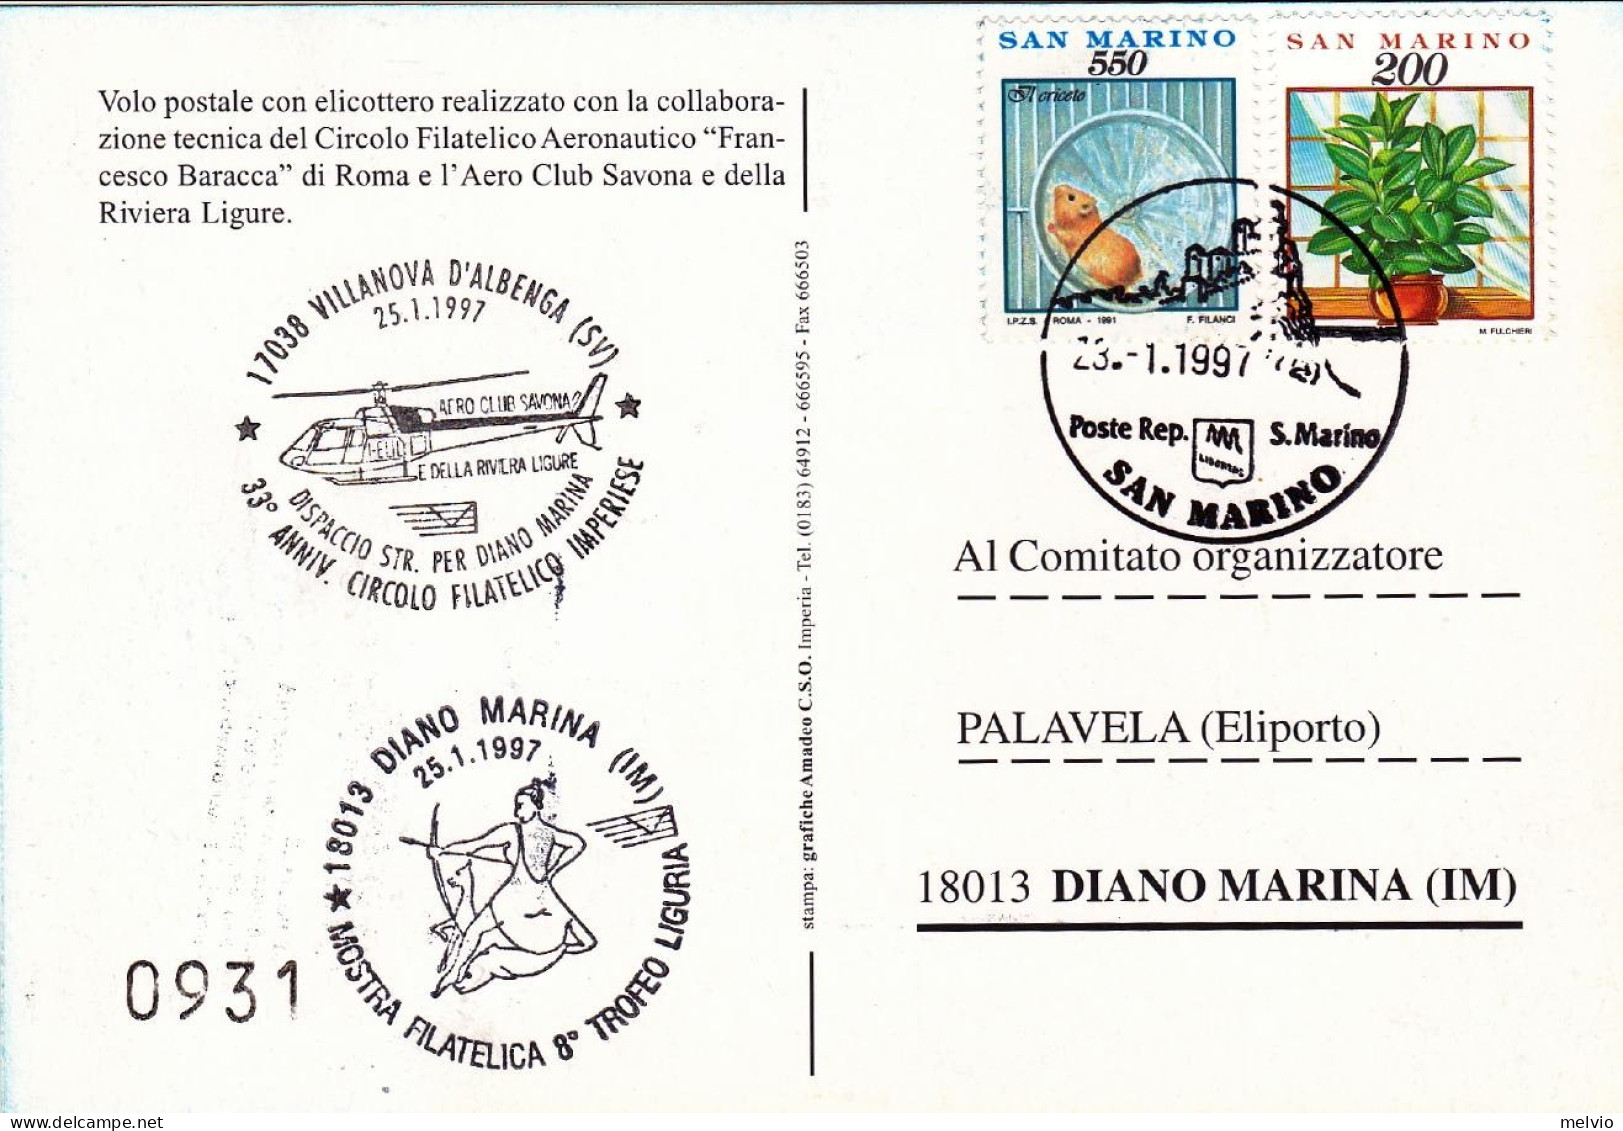 San Marino-1997 Cartolina Numerata Volo Postale Con Elicottero Villanova D'Alben - Posta Aerea